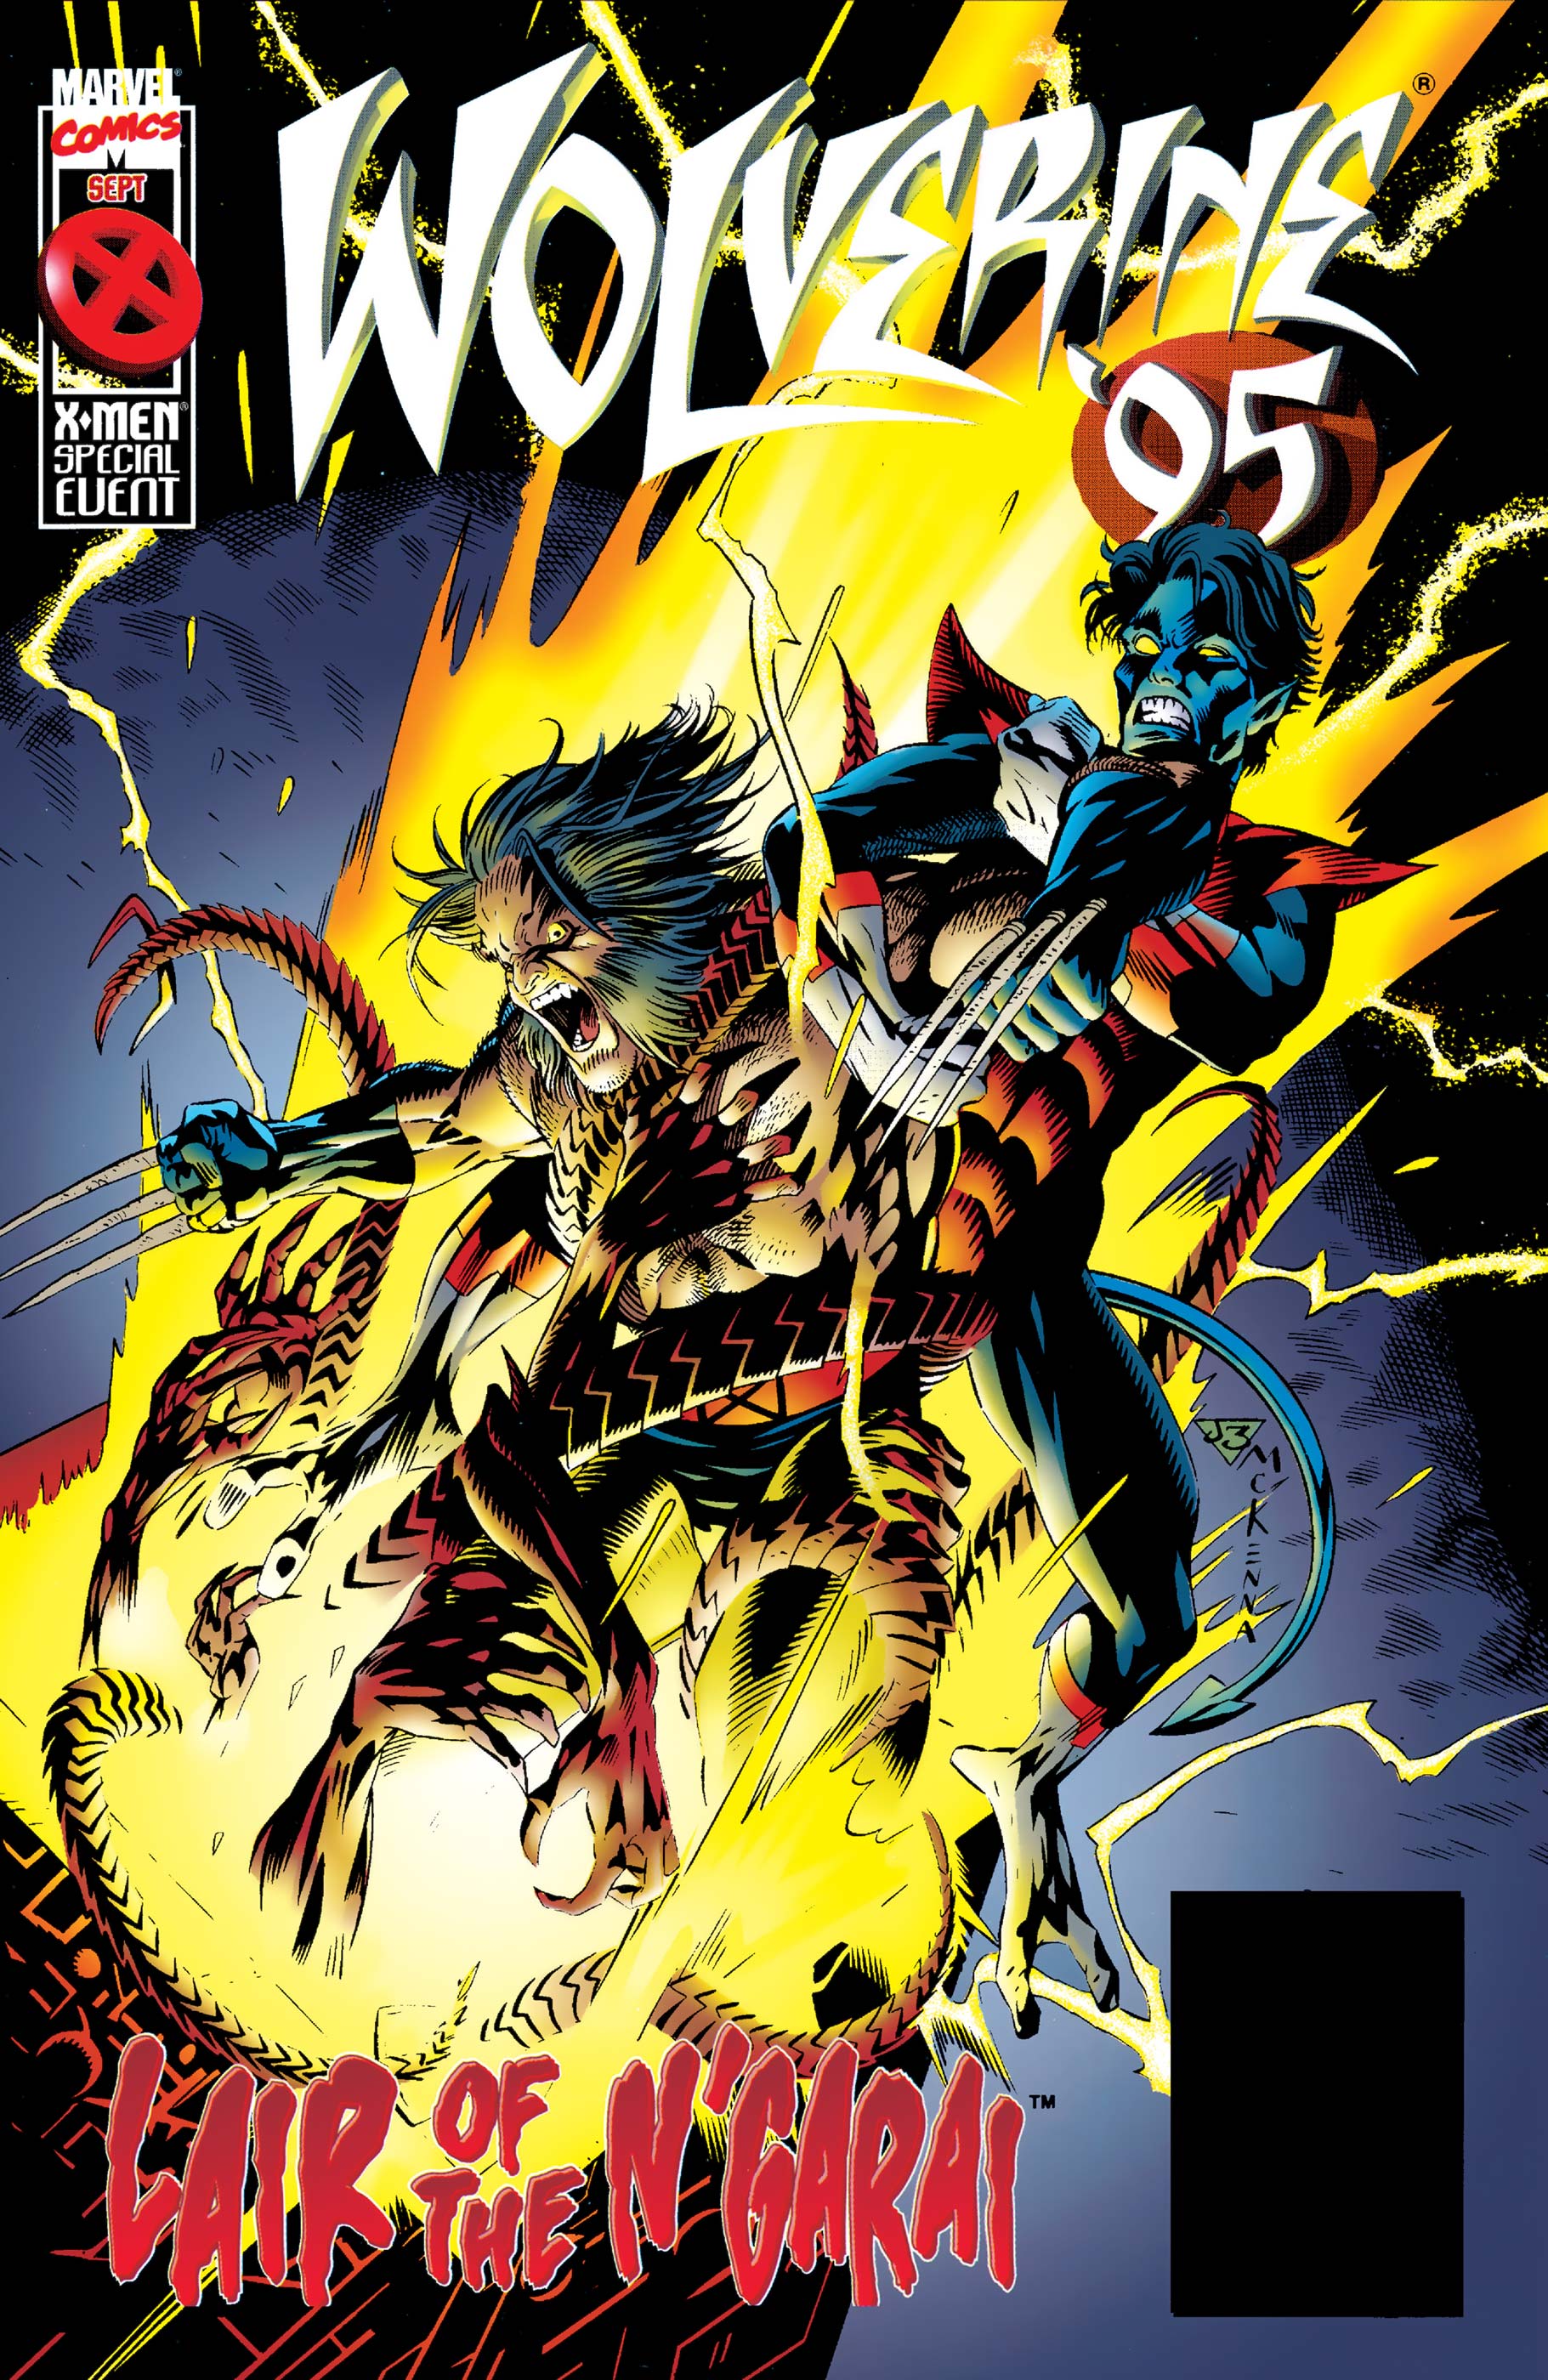 Wolverine Annual (1995) #1